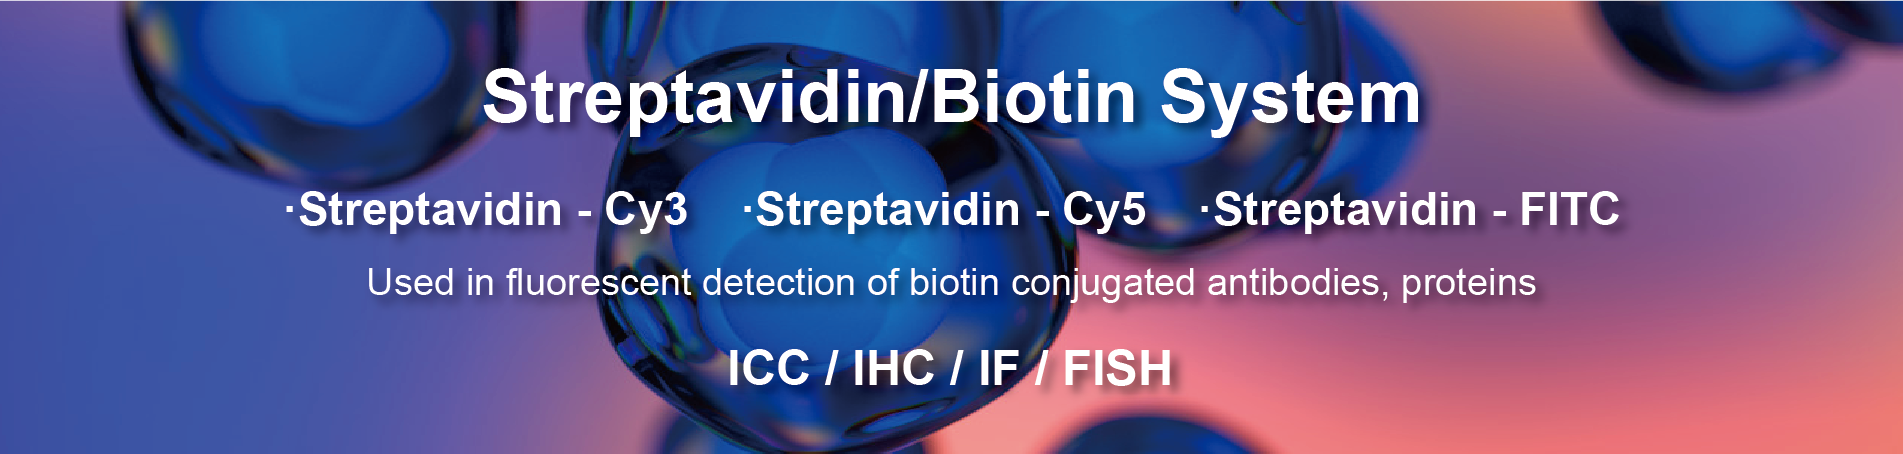 Streptavidin/Biotin System